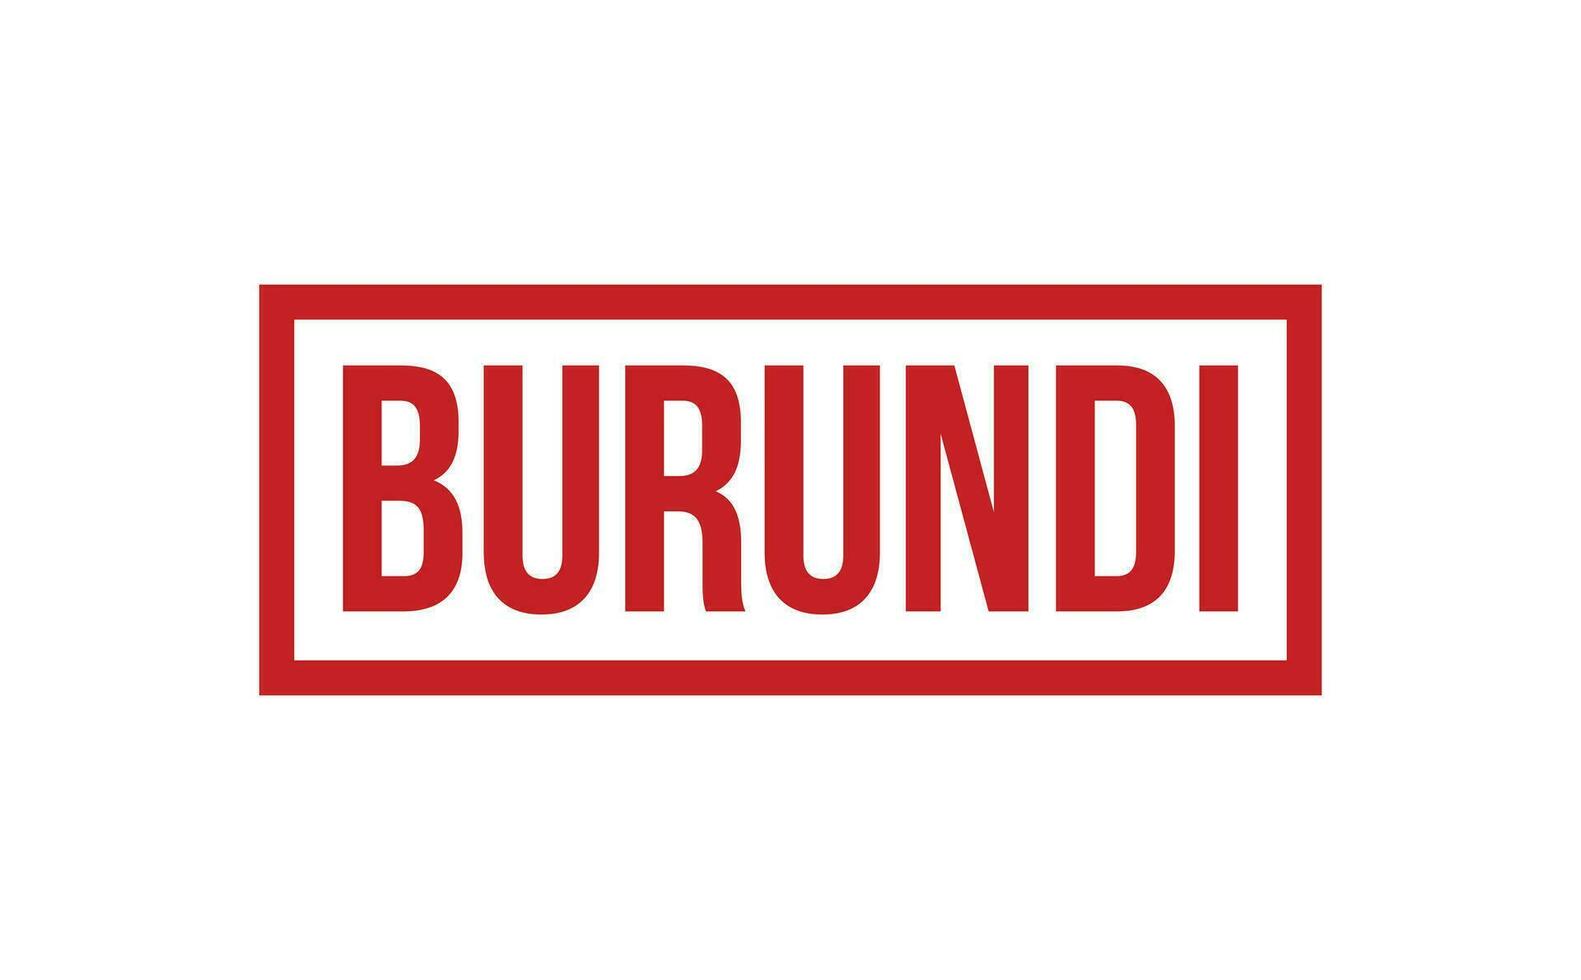 Burundi caucho sello sello vector